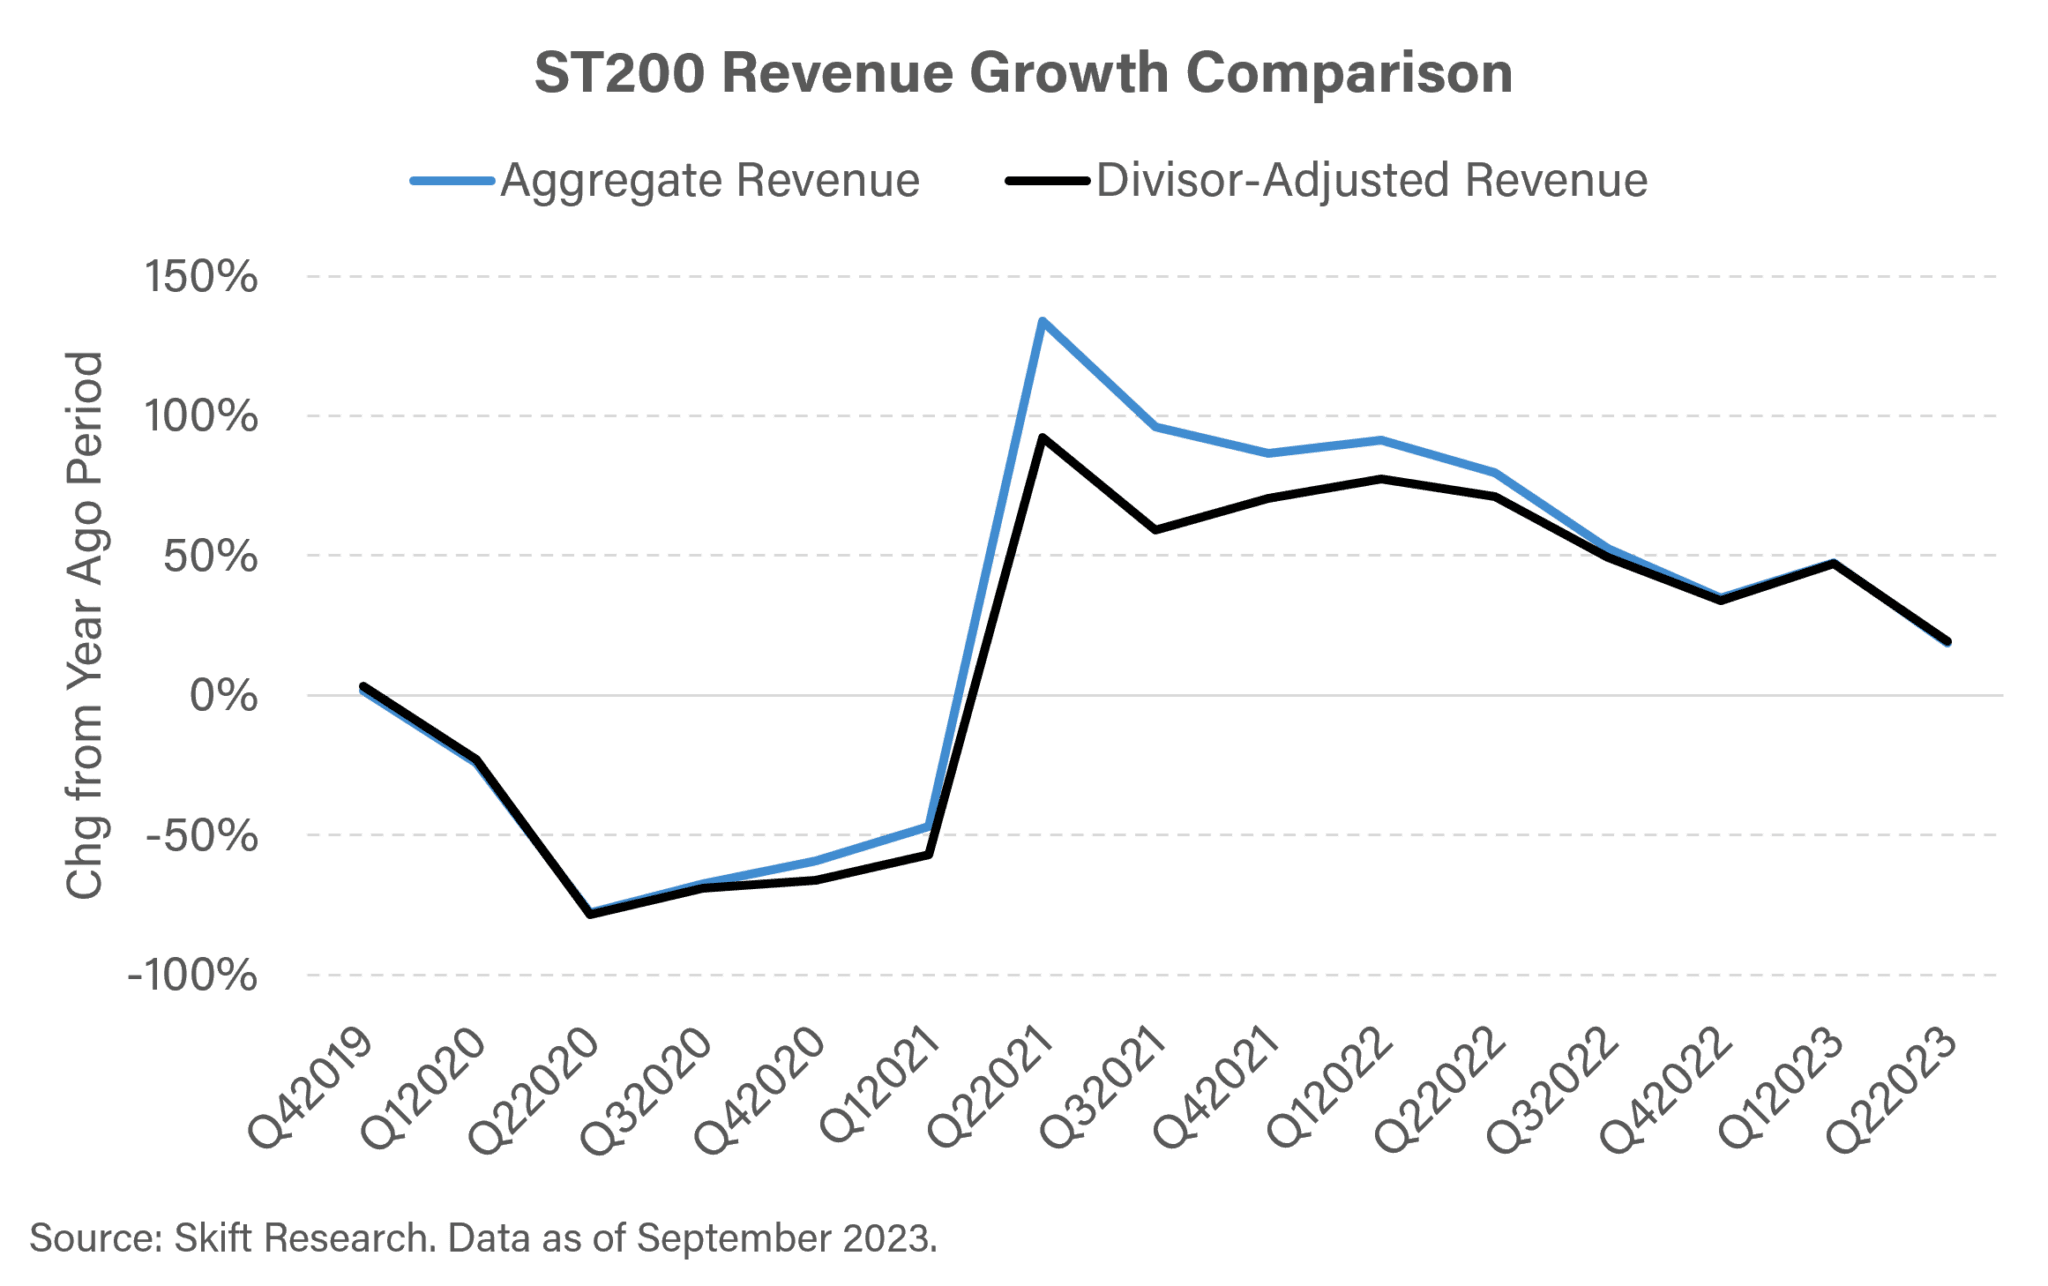 ST200 Revenue Growth Comparison